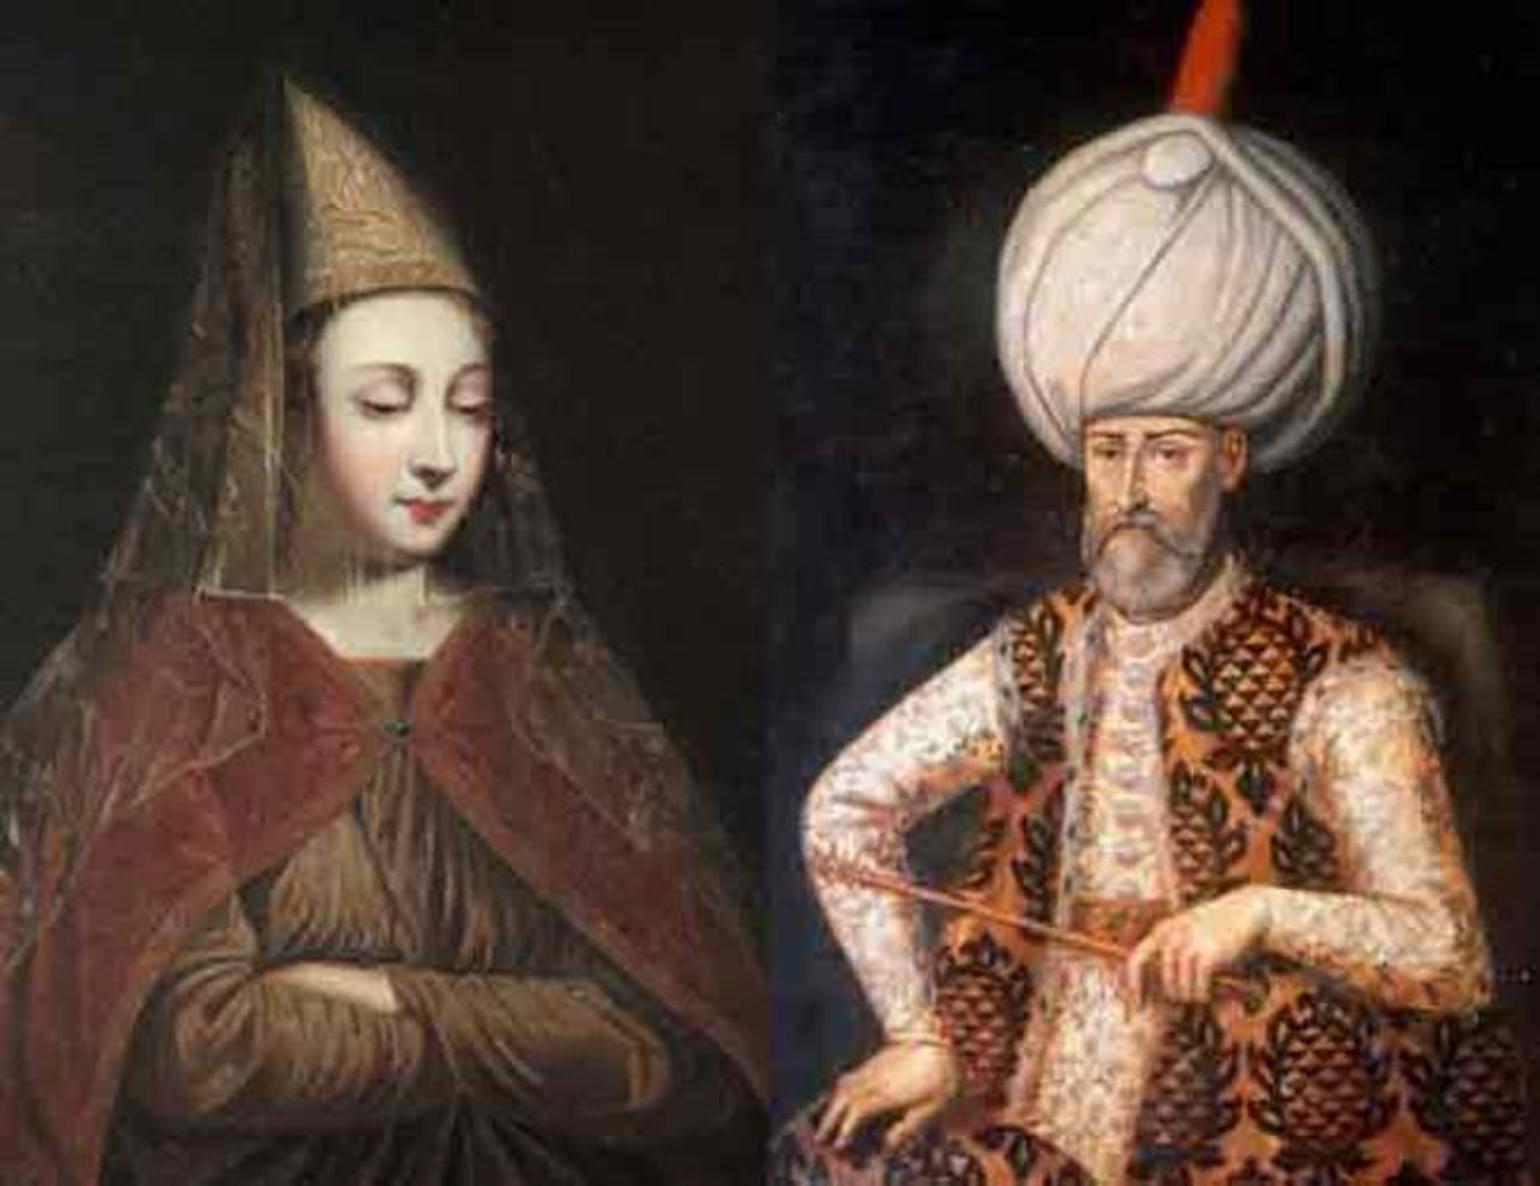 Смотреть Бесплатно Порно Мультик Великий Султан Сулейман